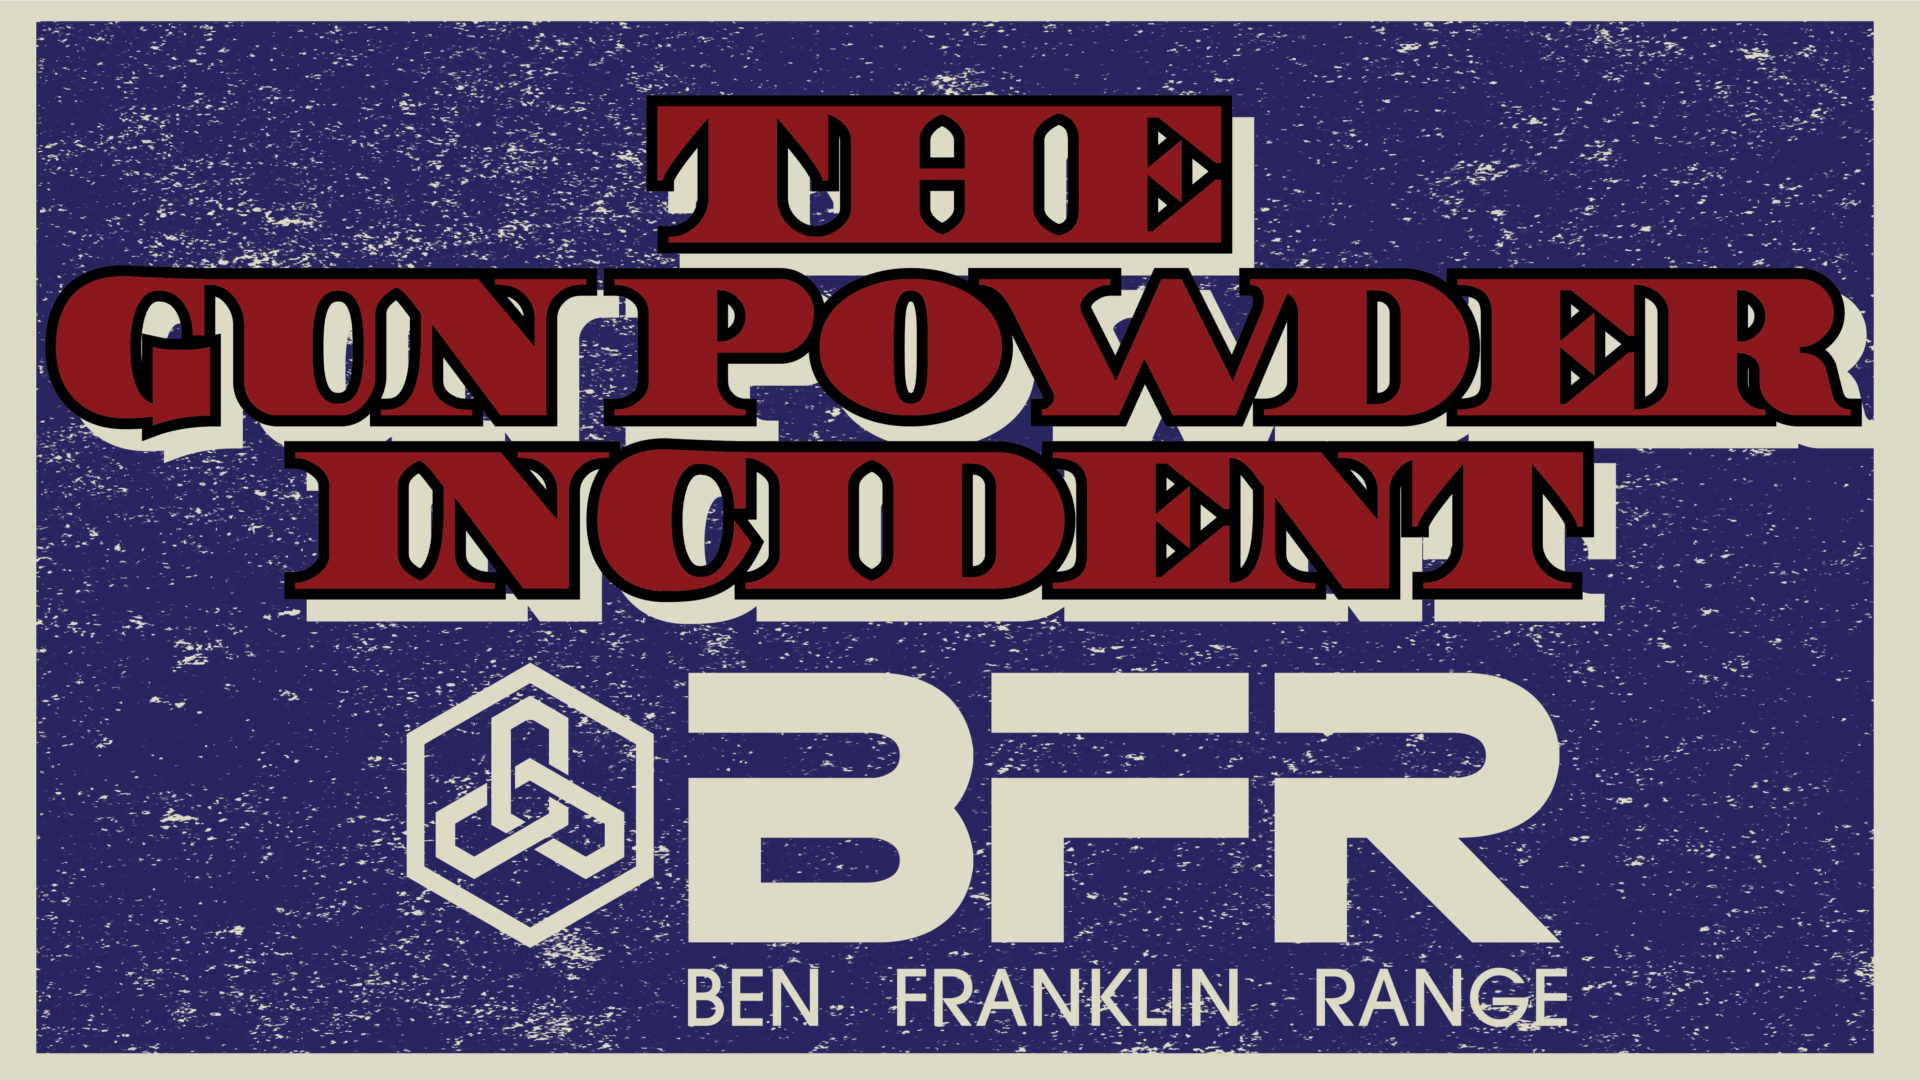 Ben Franklin Range Gun Powder Incident Airsoft